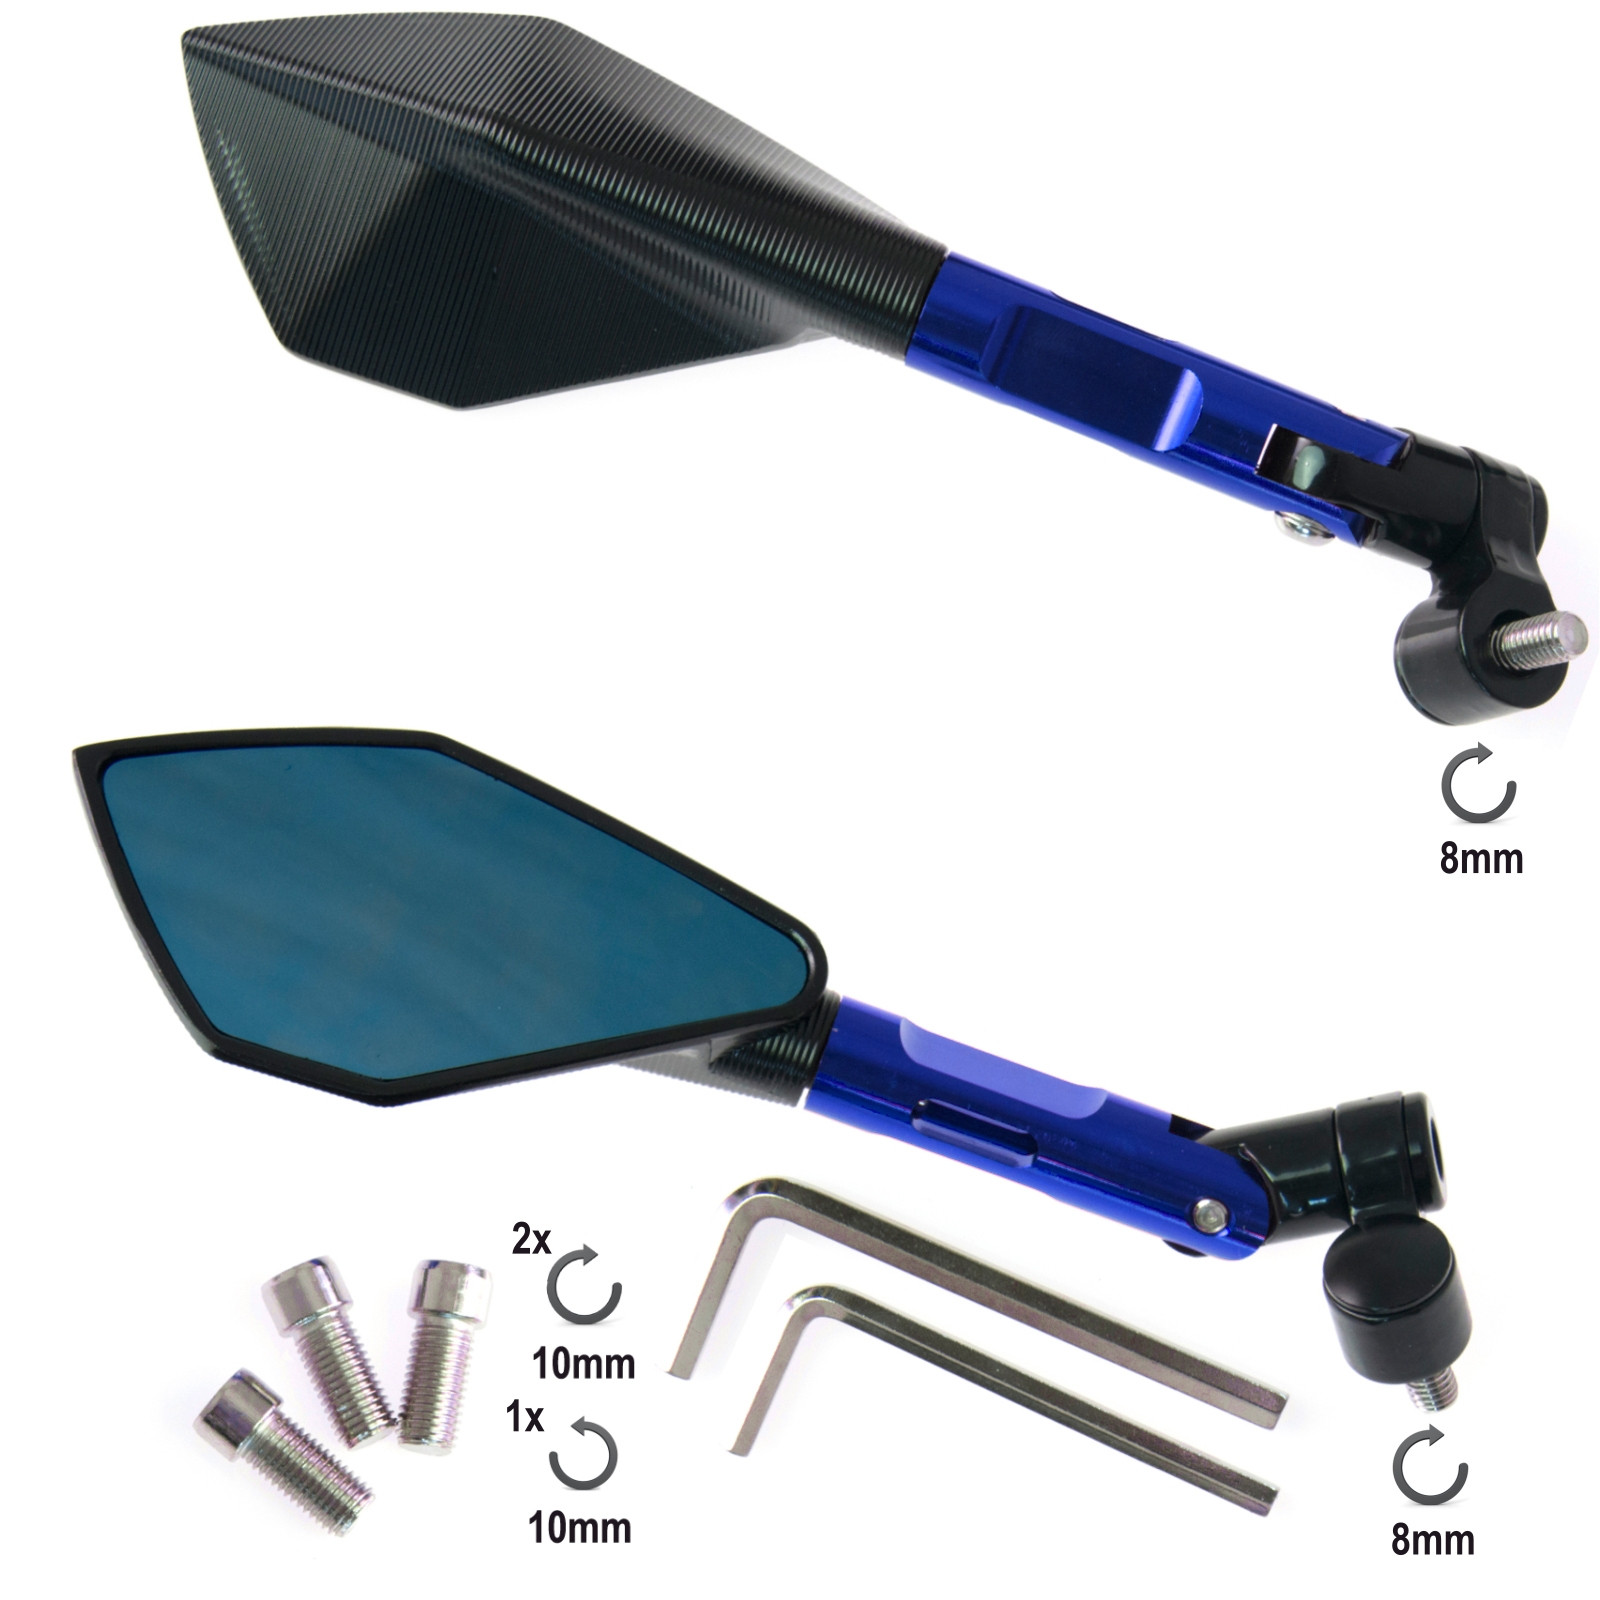 Abbigliamento Moto e Accessori - Coppia Specchietti Moto Blu Specchi in  Metallo Retrovisori Scooter Custom